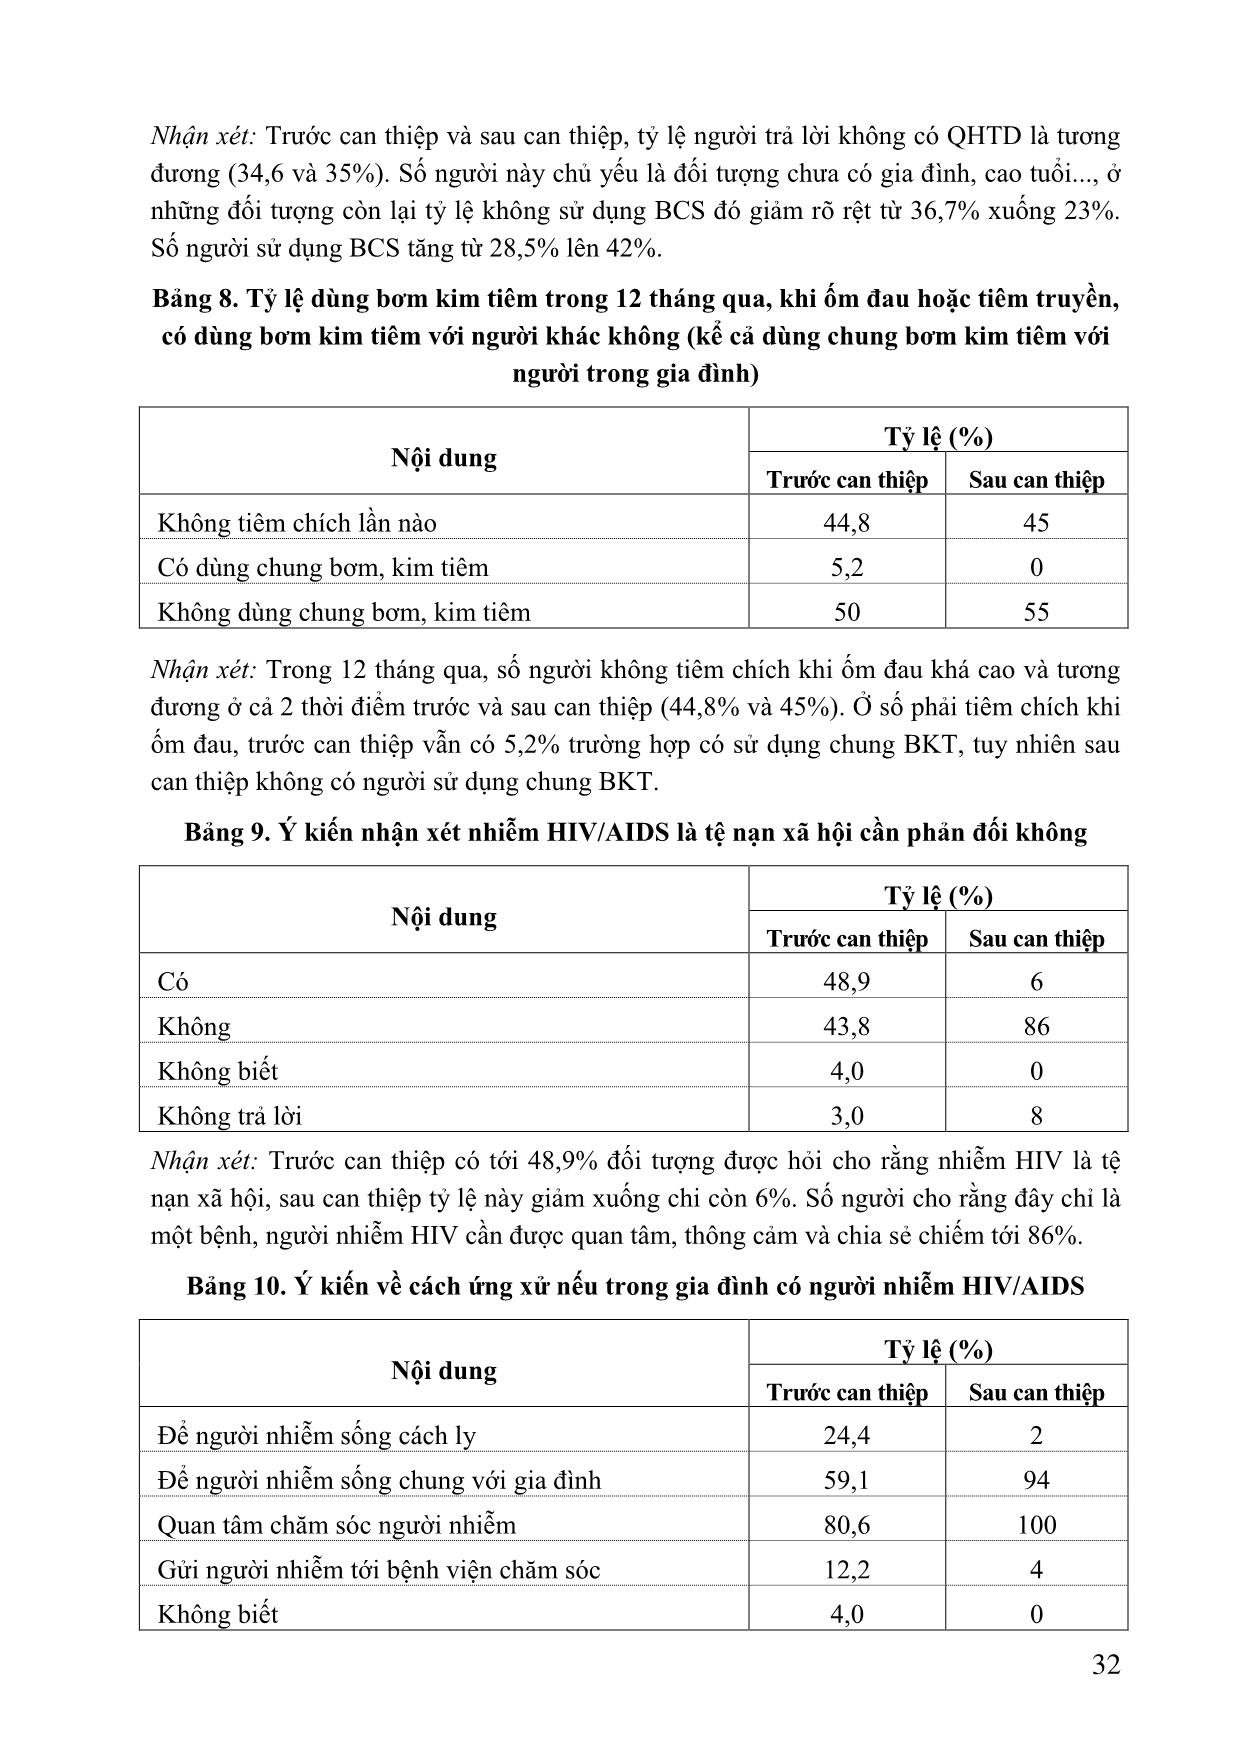 Đánh giá hiệu quả các hoạt động truyền thông thay đổi hành vi trong phòng chống HIV/AIDS tại xã Gia Sinh năm 2009-2010 trang 6